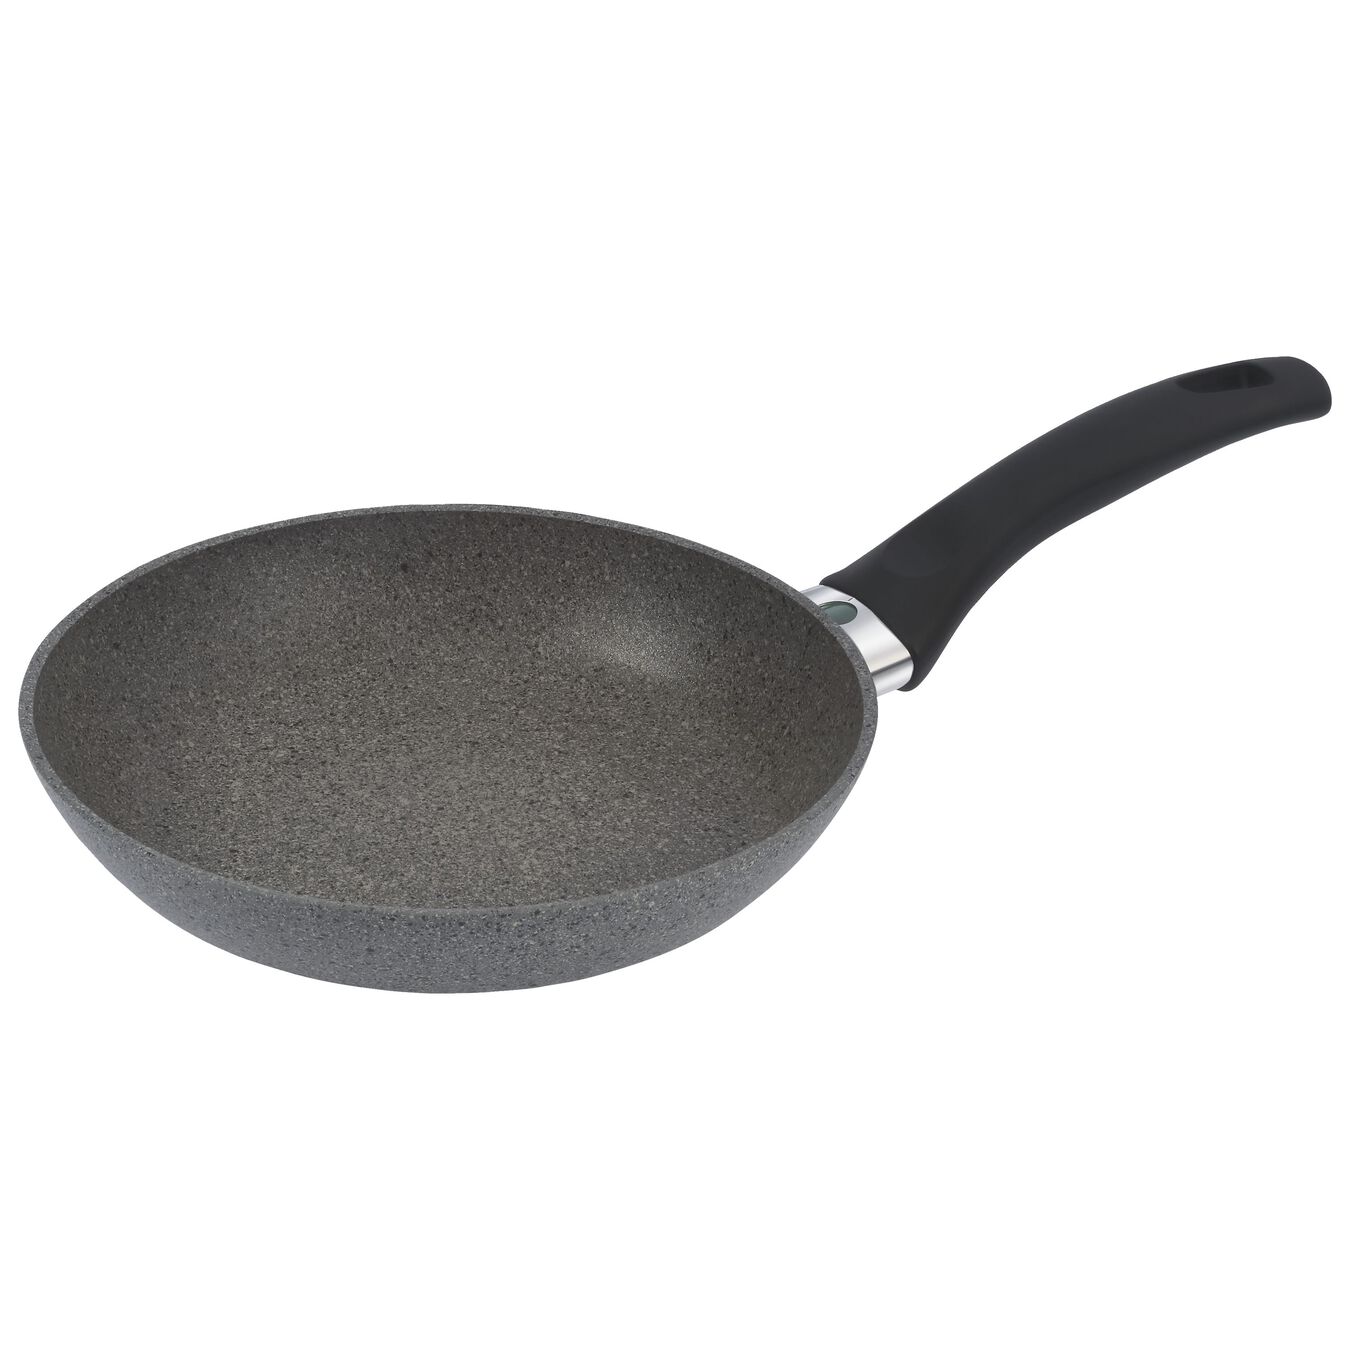 20 cm Aluminium Frying pan,,large 1